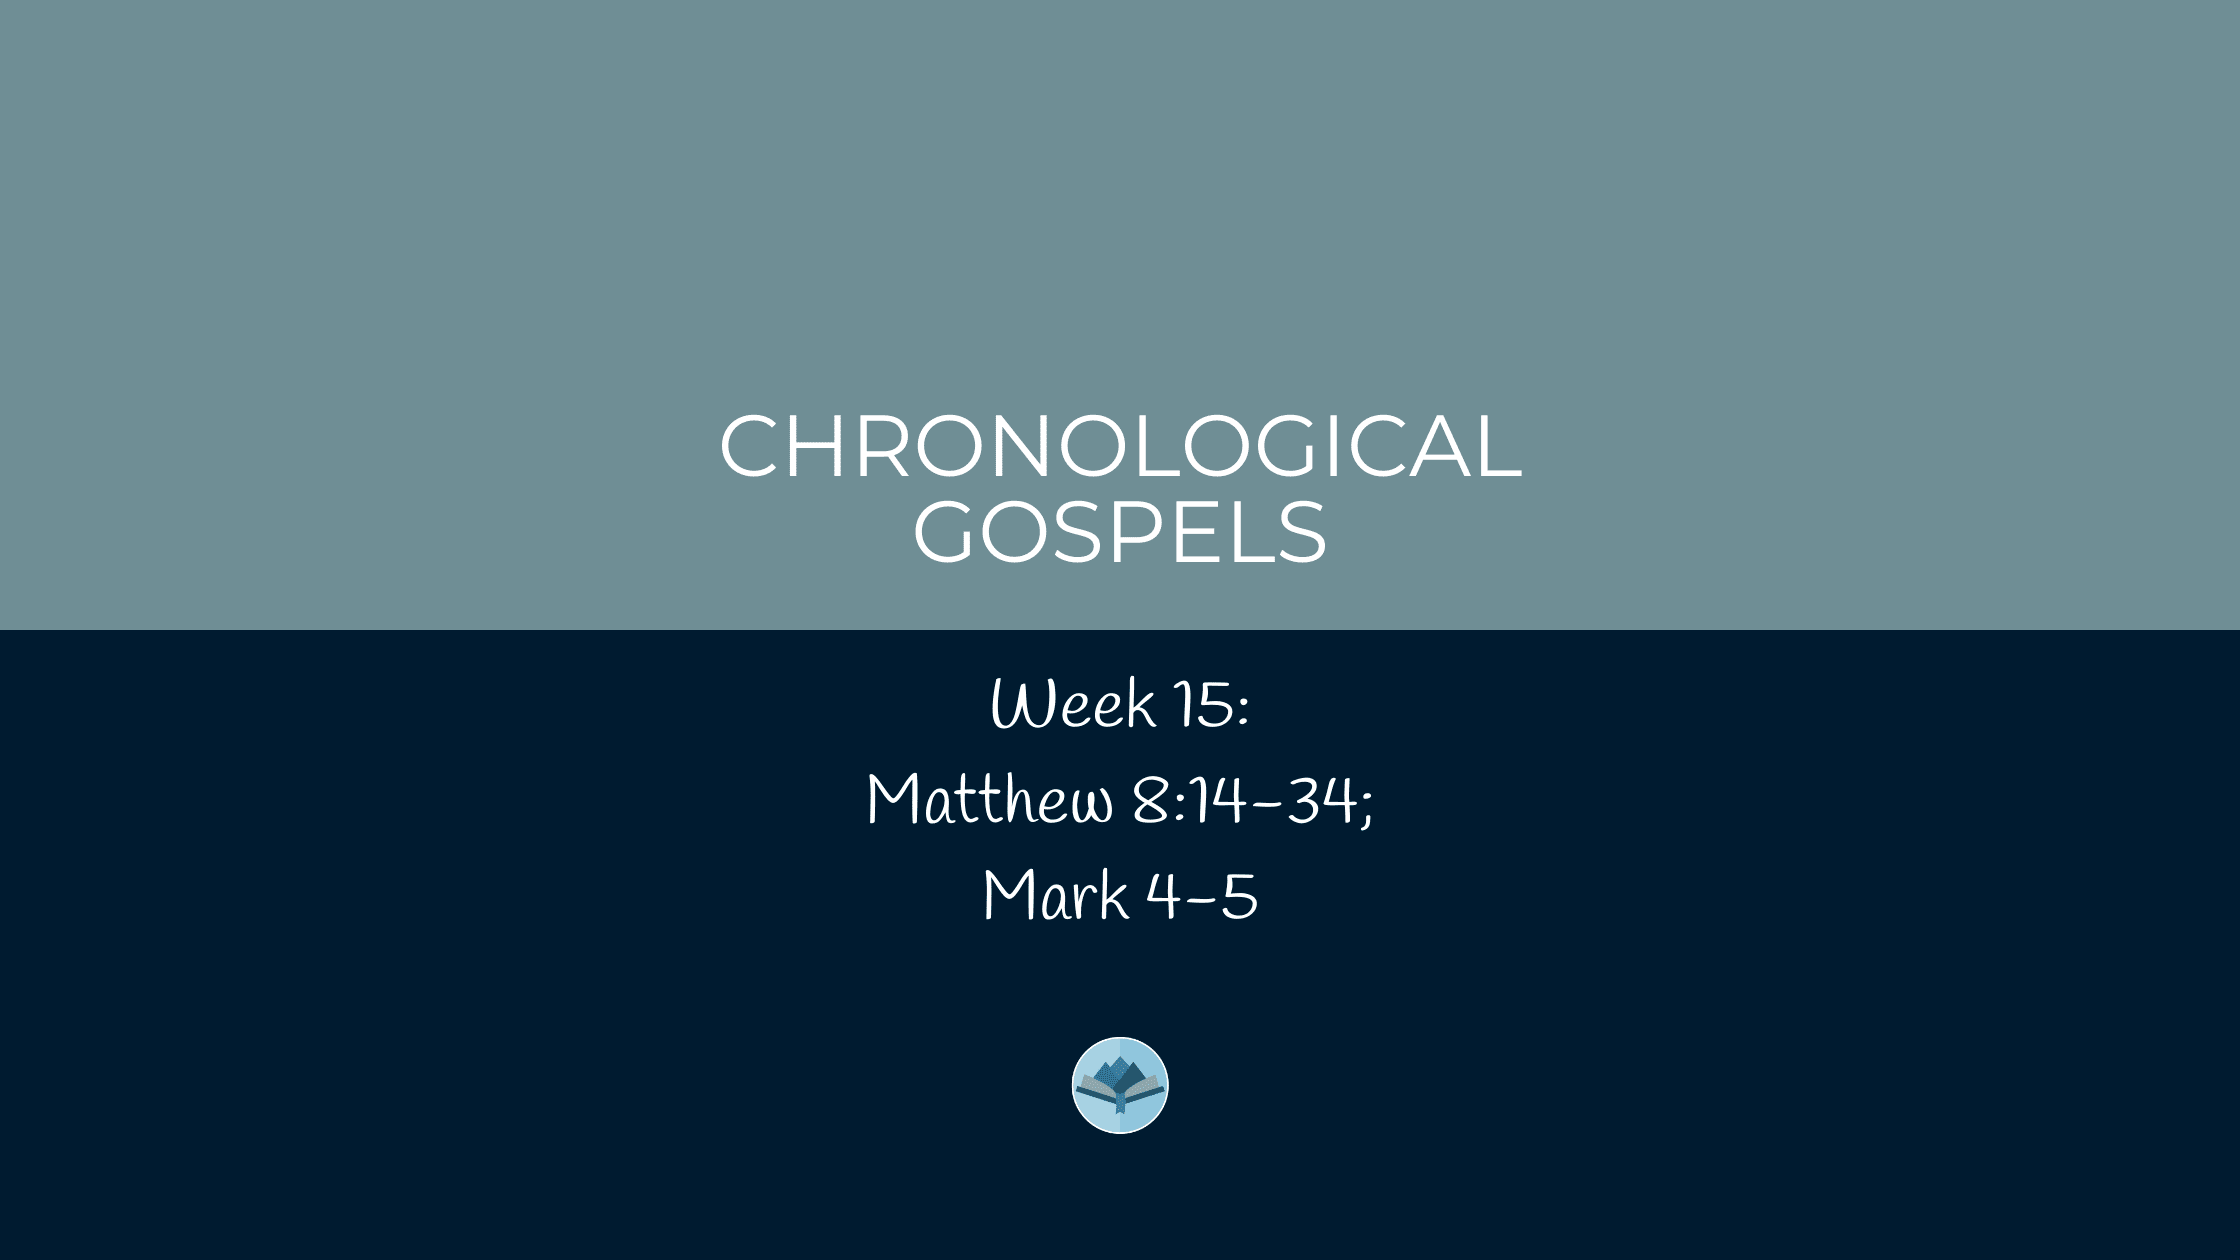 Chronological Gospels: Matthew 8:14-34; Mark 4-5